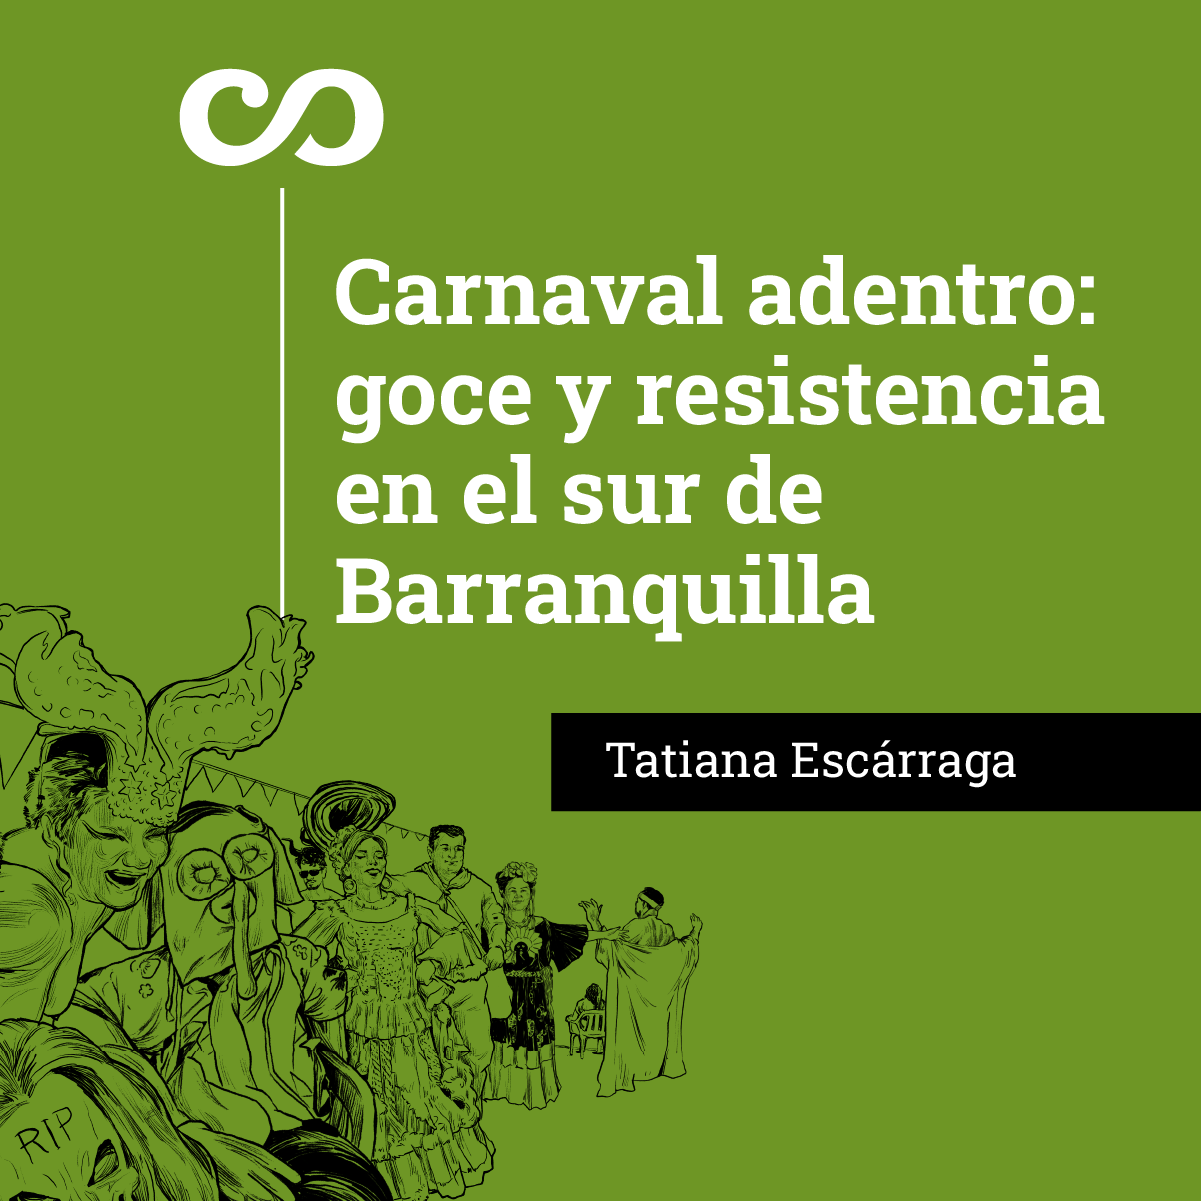 Carnaval adentro: goce y resistencia en el sur de Barranquilla